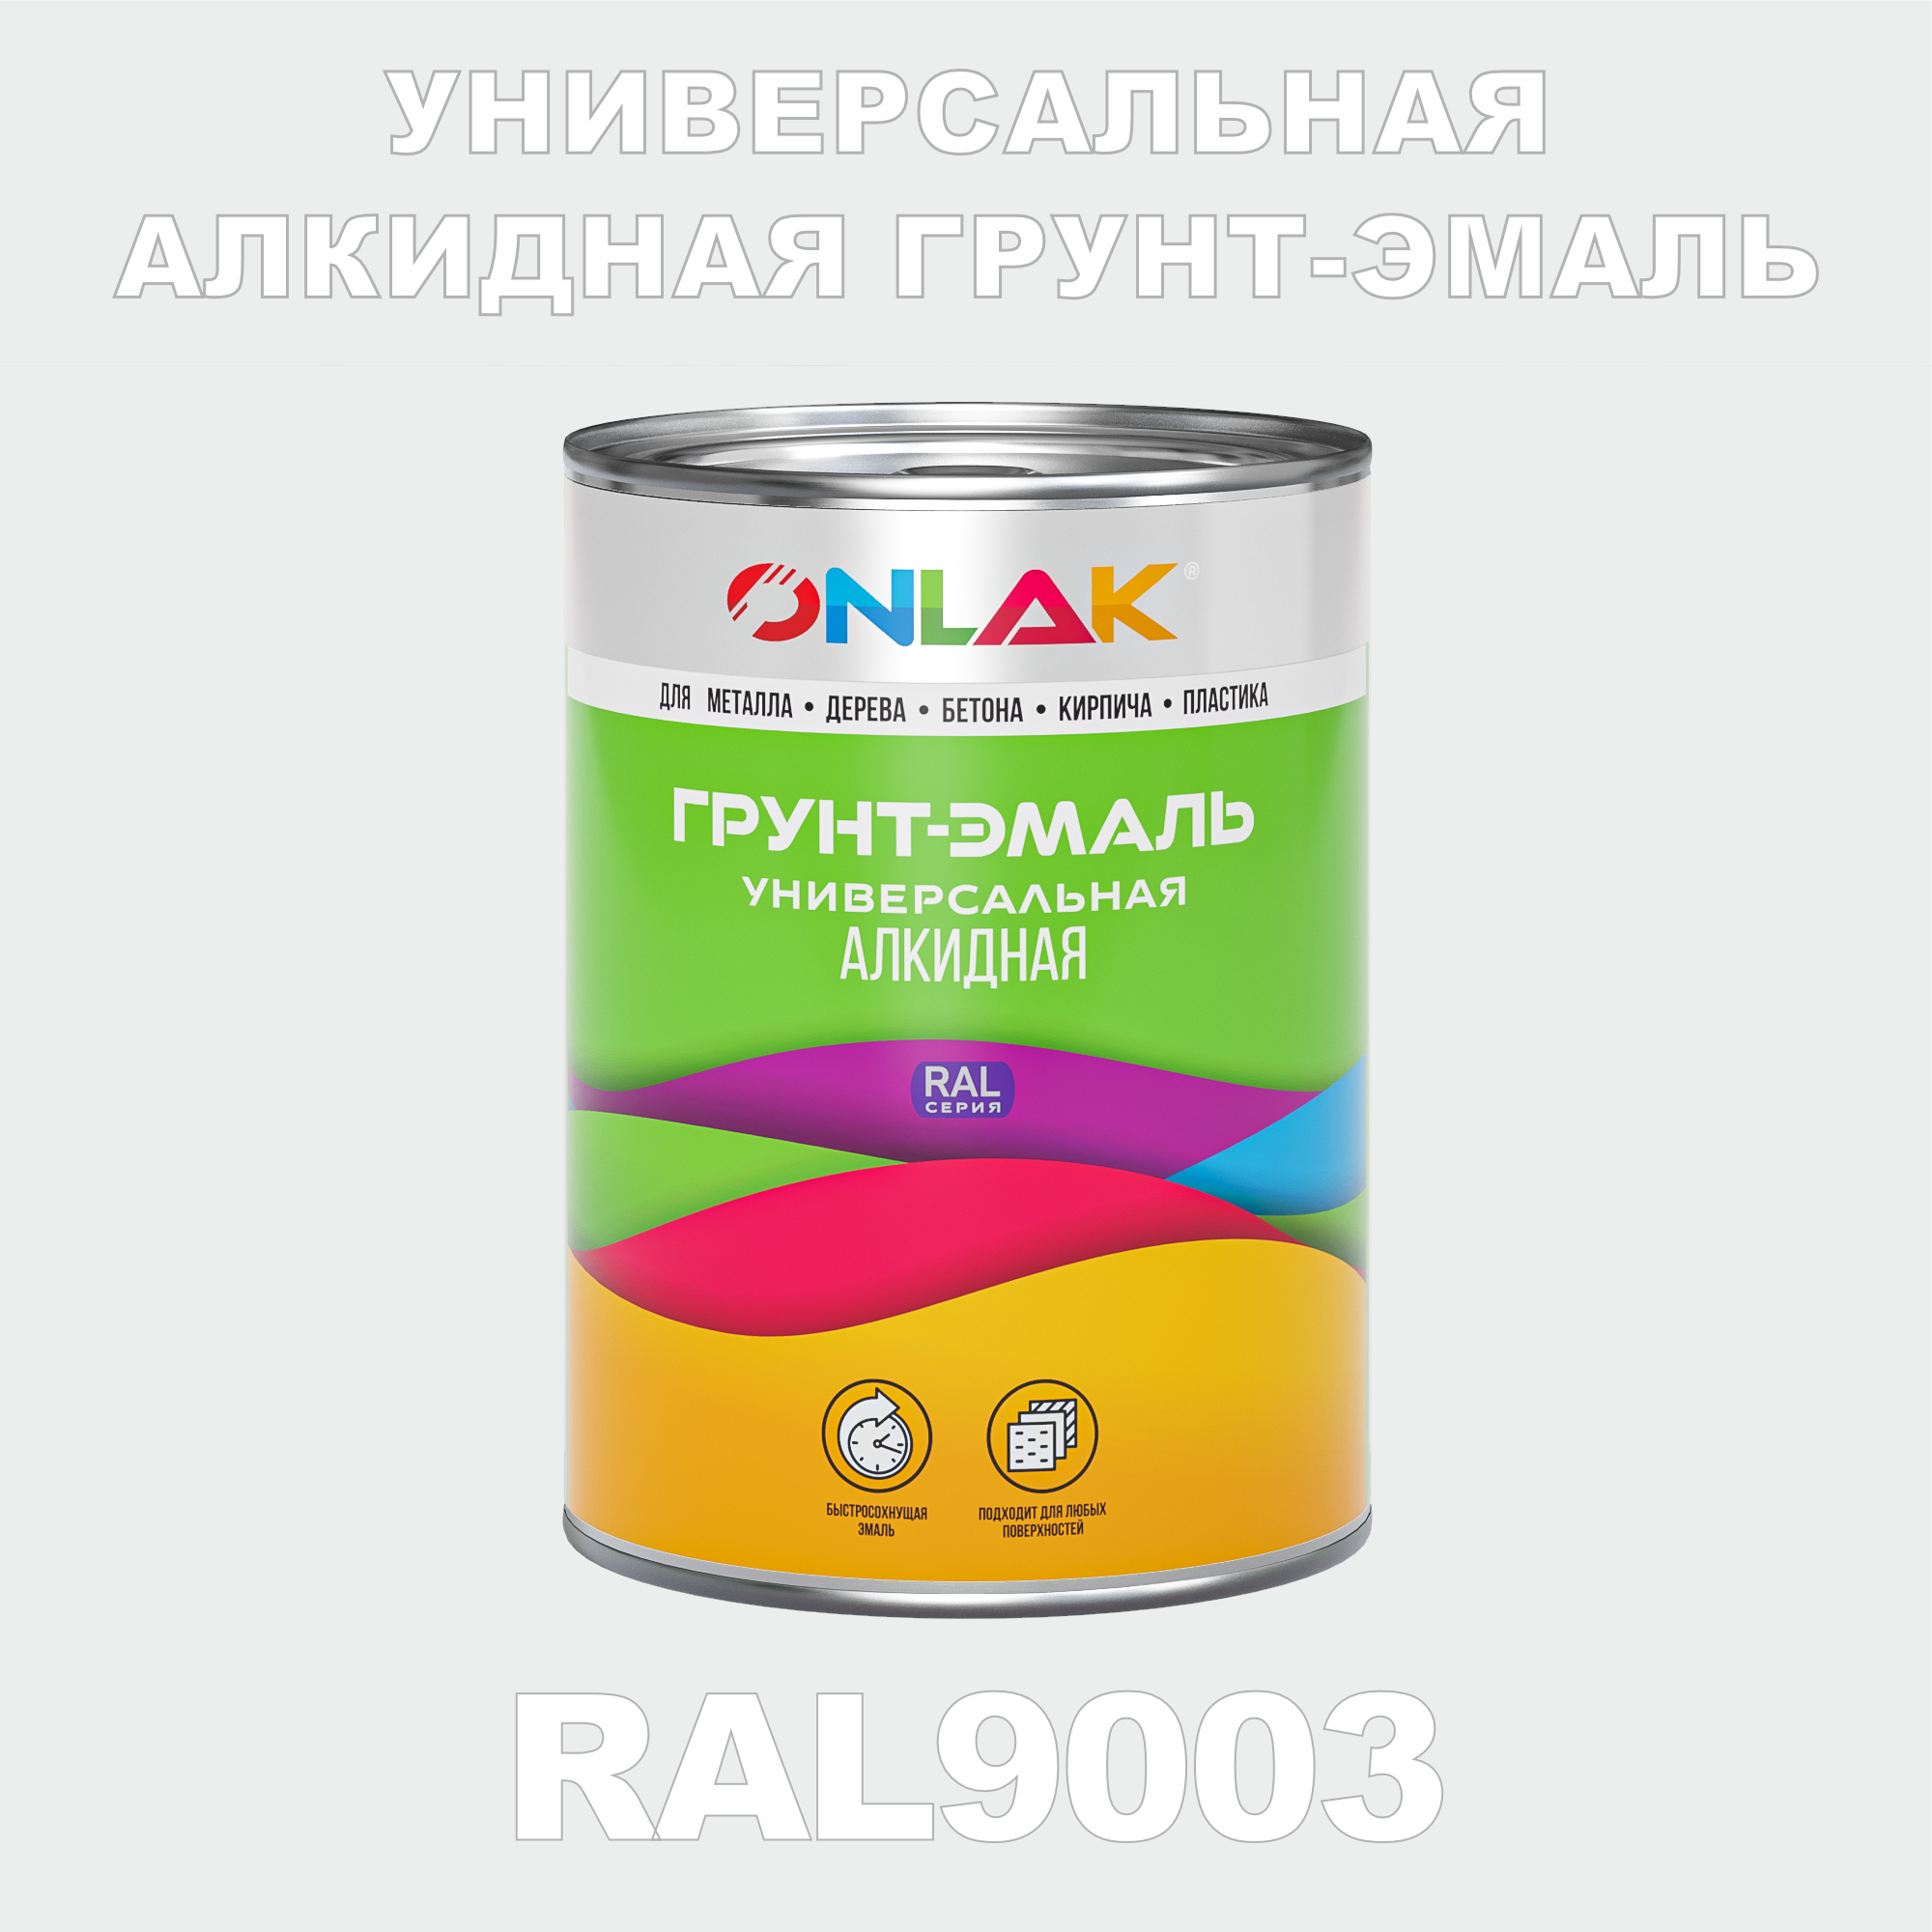 Грунт-эмаль ONLAK 1К RAL9003 антикоррозионная алкидная по металлу по ржавчине 1 кг грунт эмаль skladno по ржавчине алкидная желтая 1 8 кг